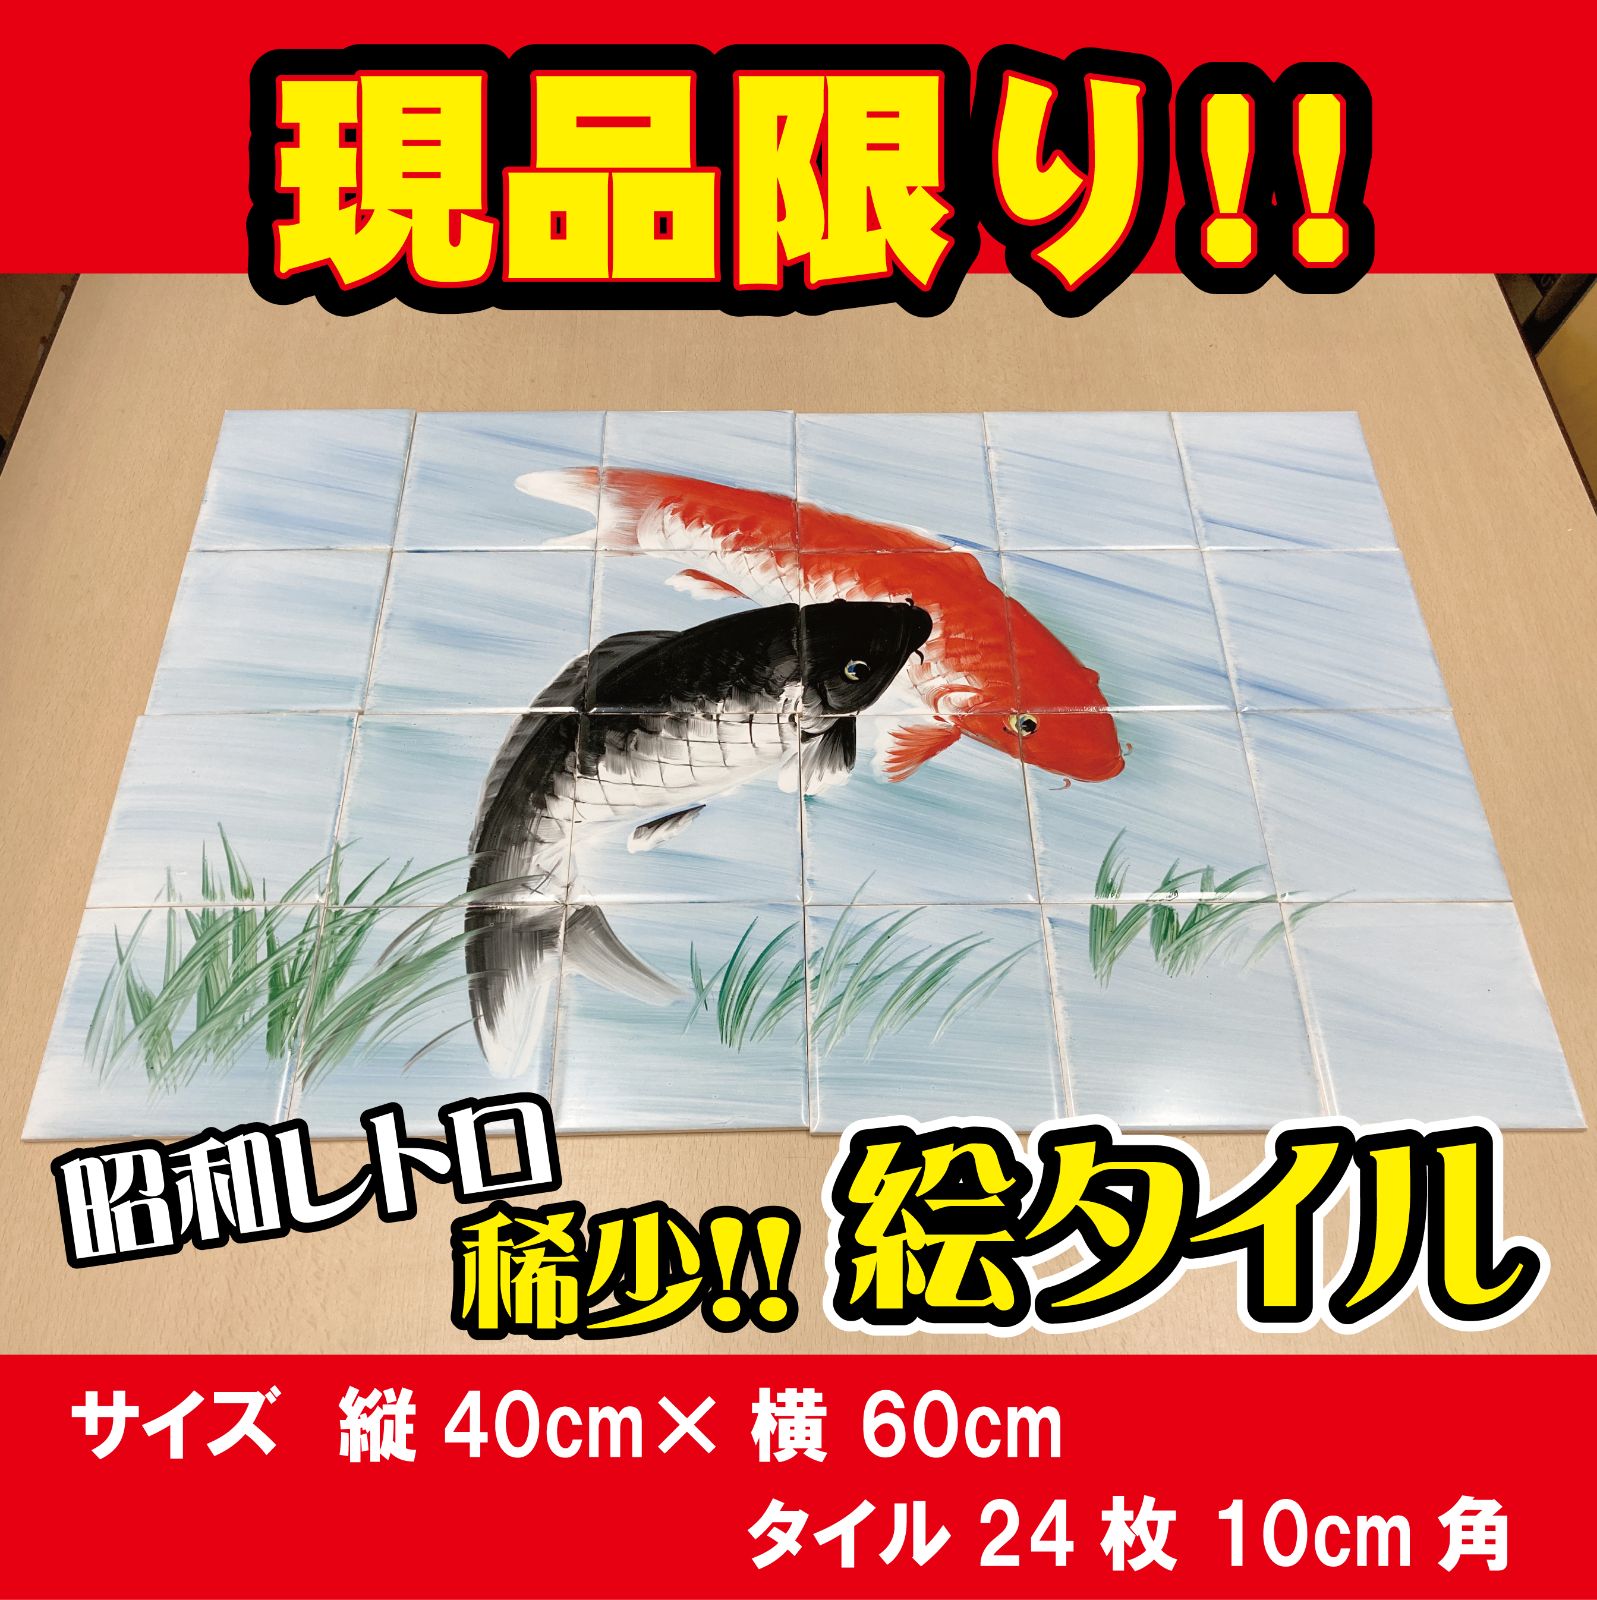 昭和レトロ 絵タイル「鯉(赤・黒)」 24枚組セット - 丸昭 熊本店